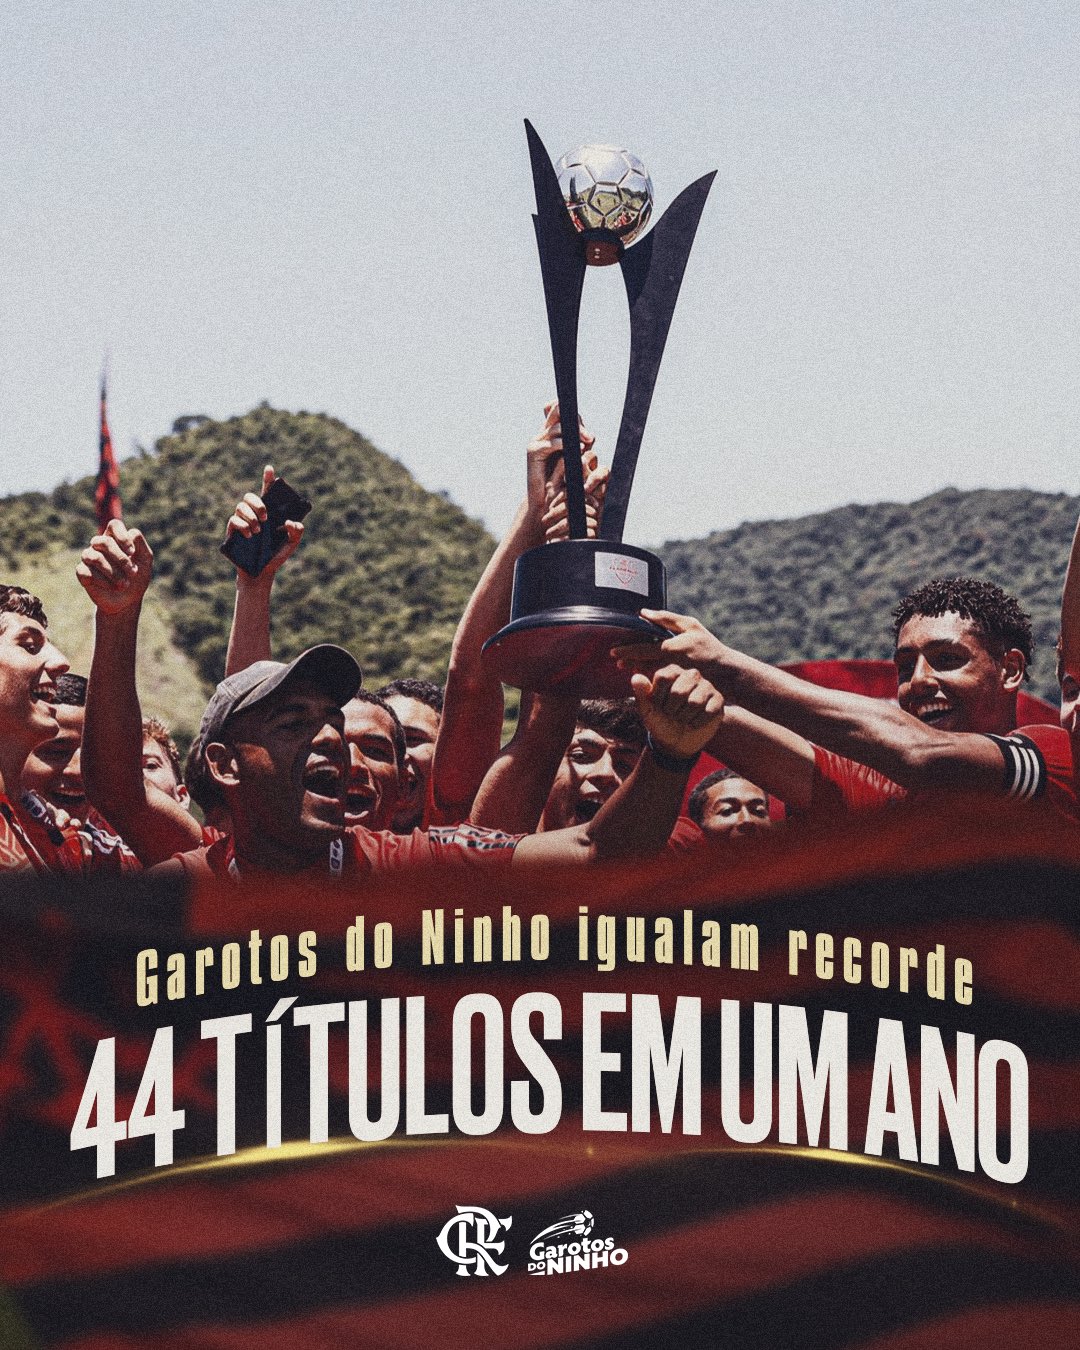 x P9️⃣ em 2023  Flamengo e atlético, Framengo, Flamengo twitter